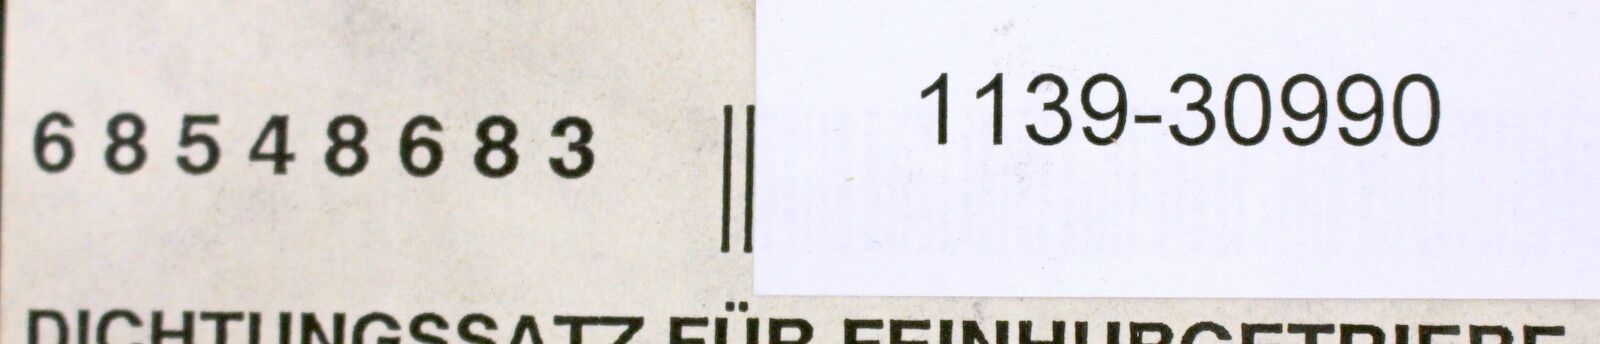 MAN GHH Dichtungssatz für Feinhubgetriebe für Laufkatze Typ 25 BL 163.212.4/FNE